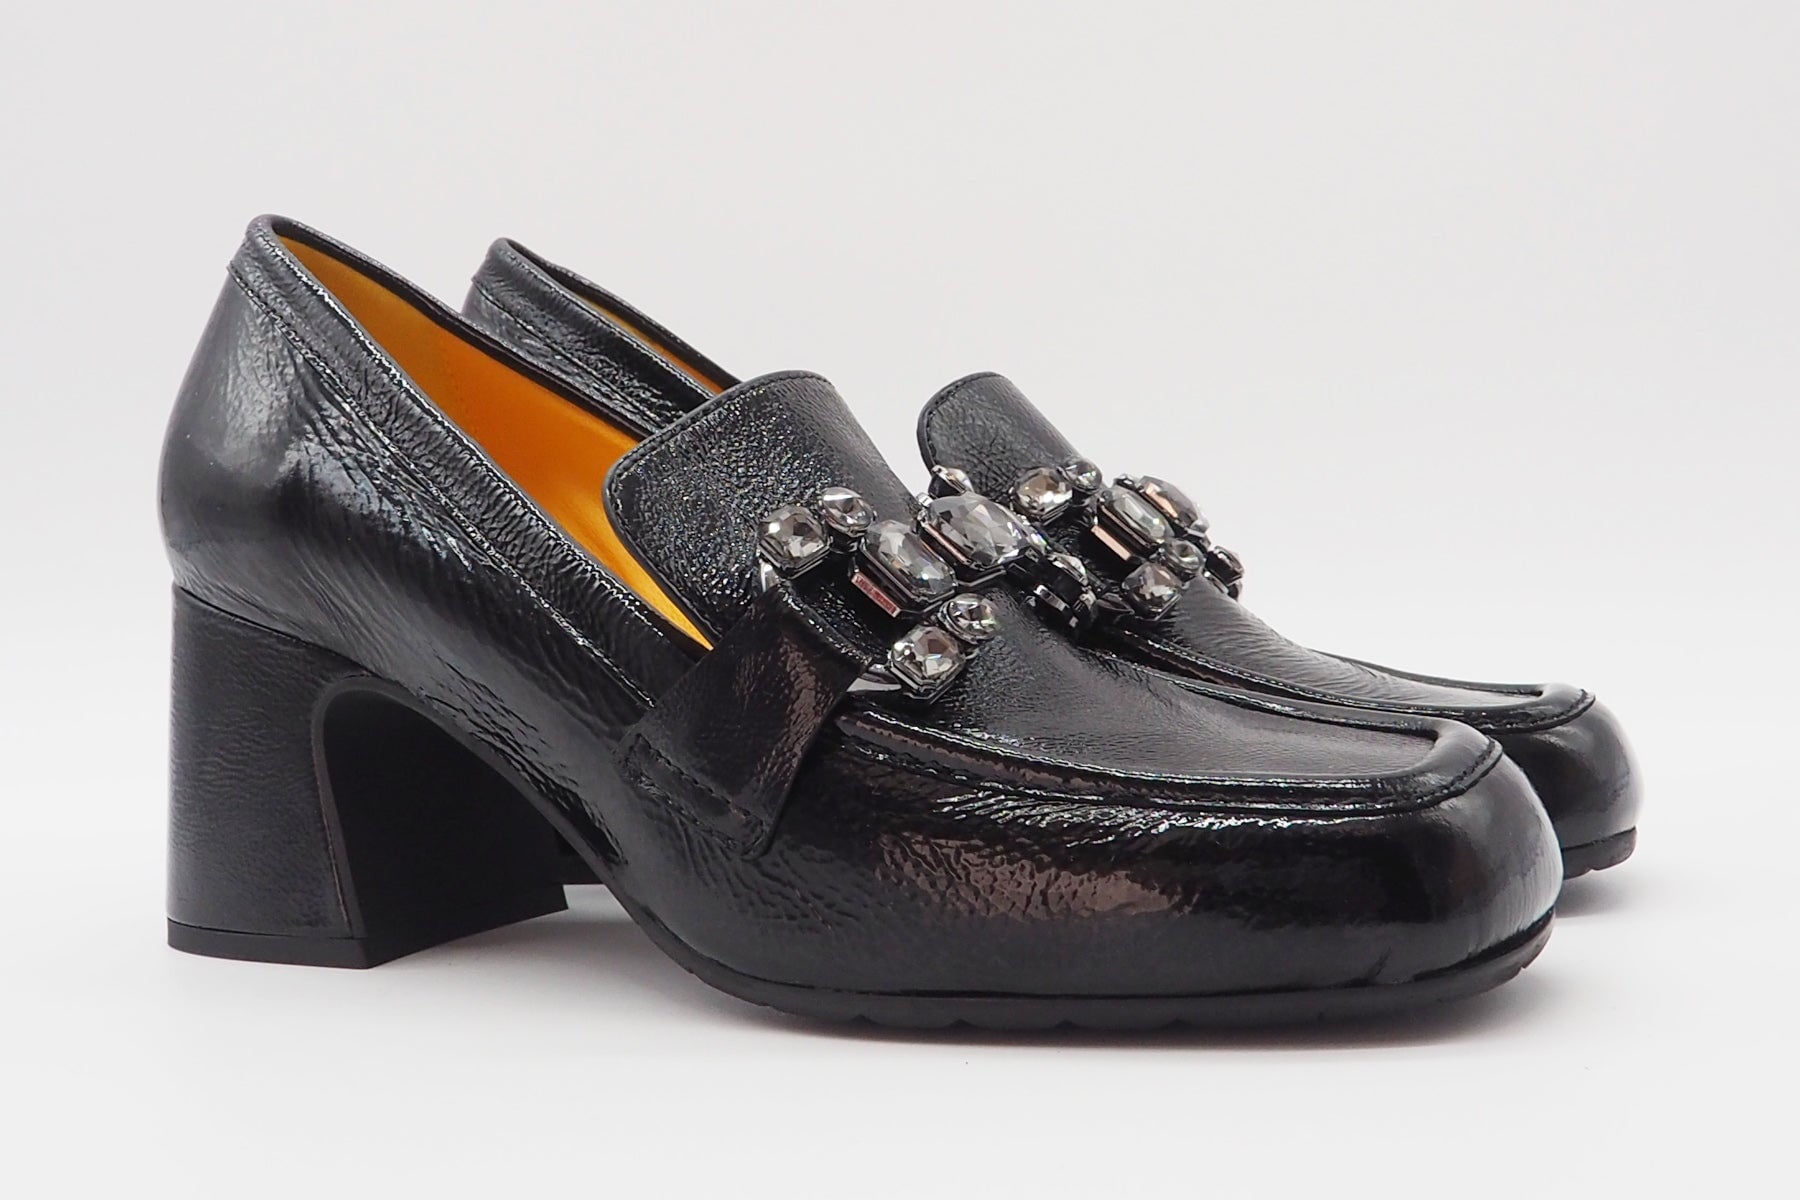 Damen Absatz-Loafer aus Lackleder in Schwarz mit Trense - Absatz 6cm Damen Loafers & Schnürer Mara Bini 